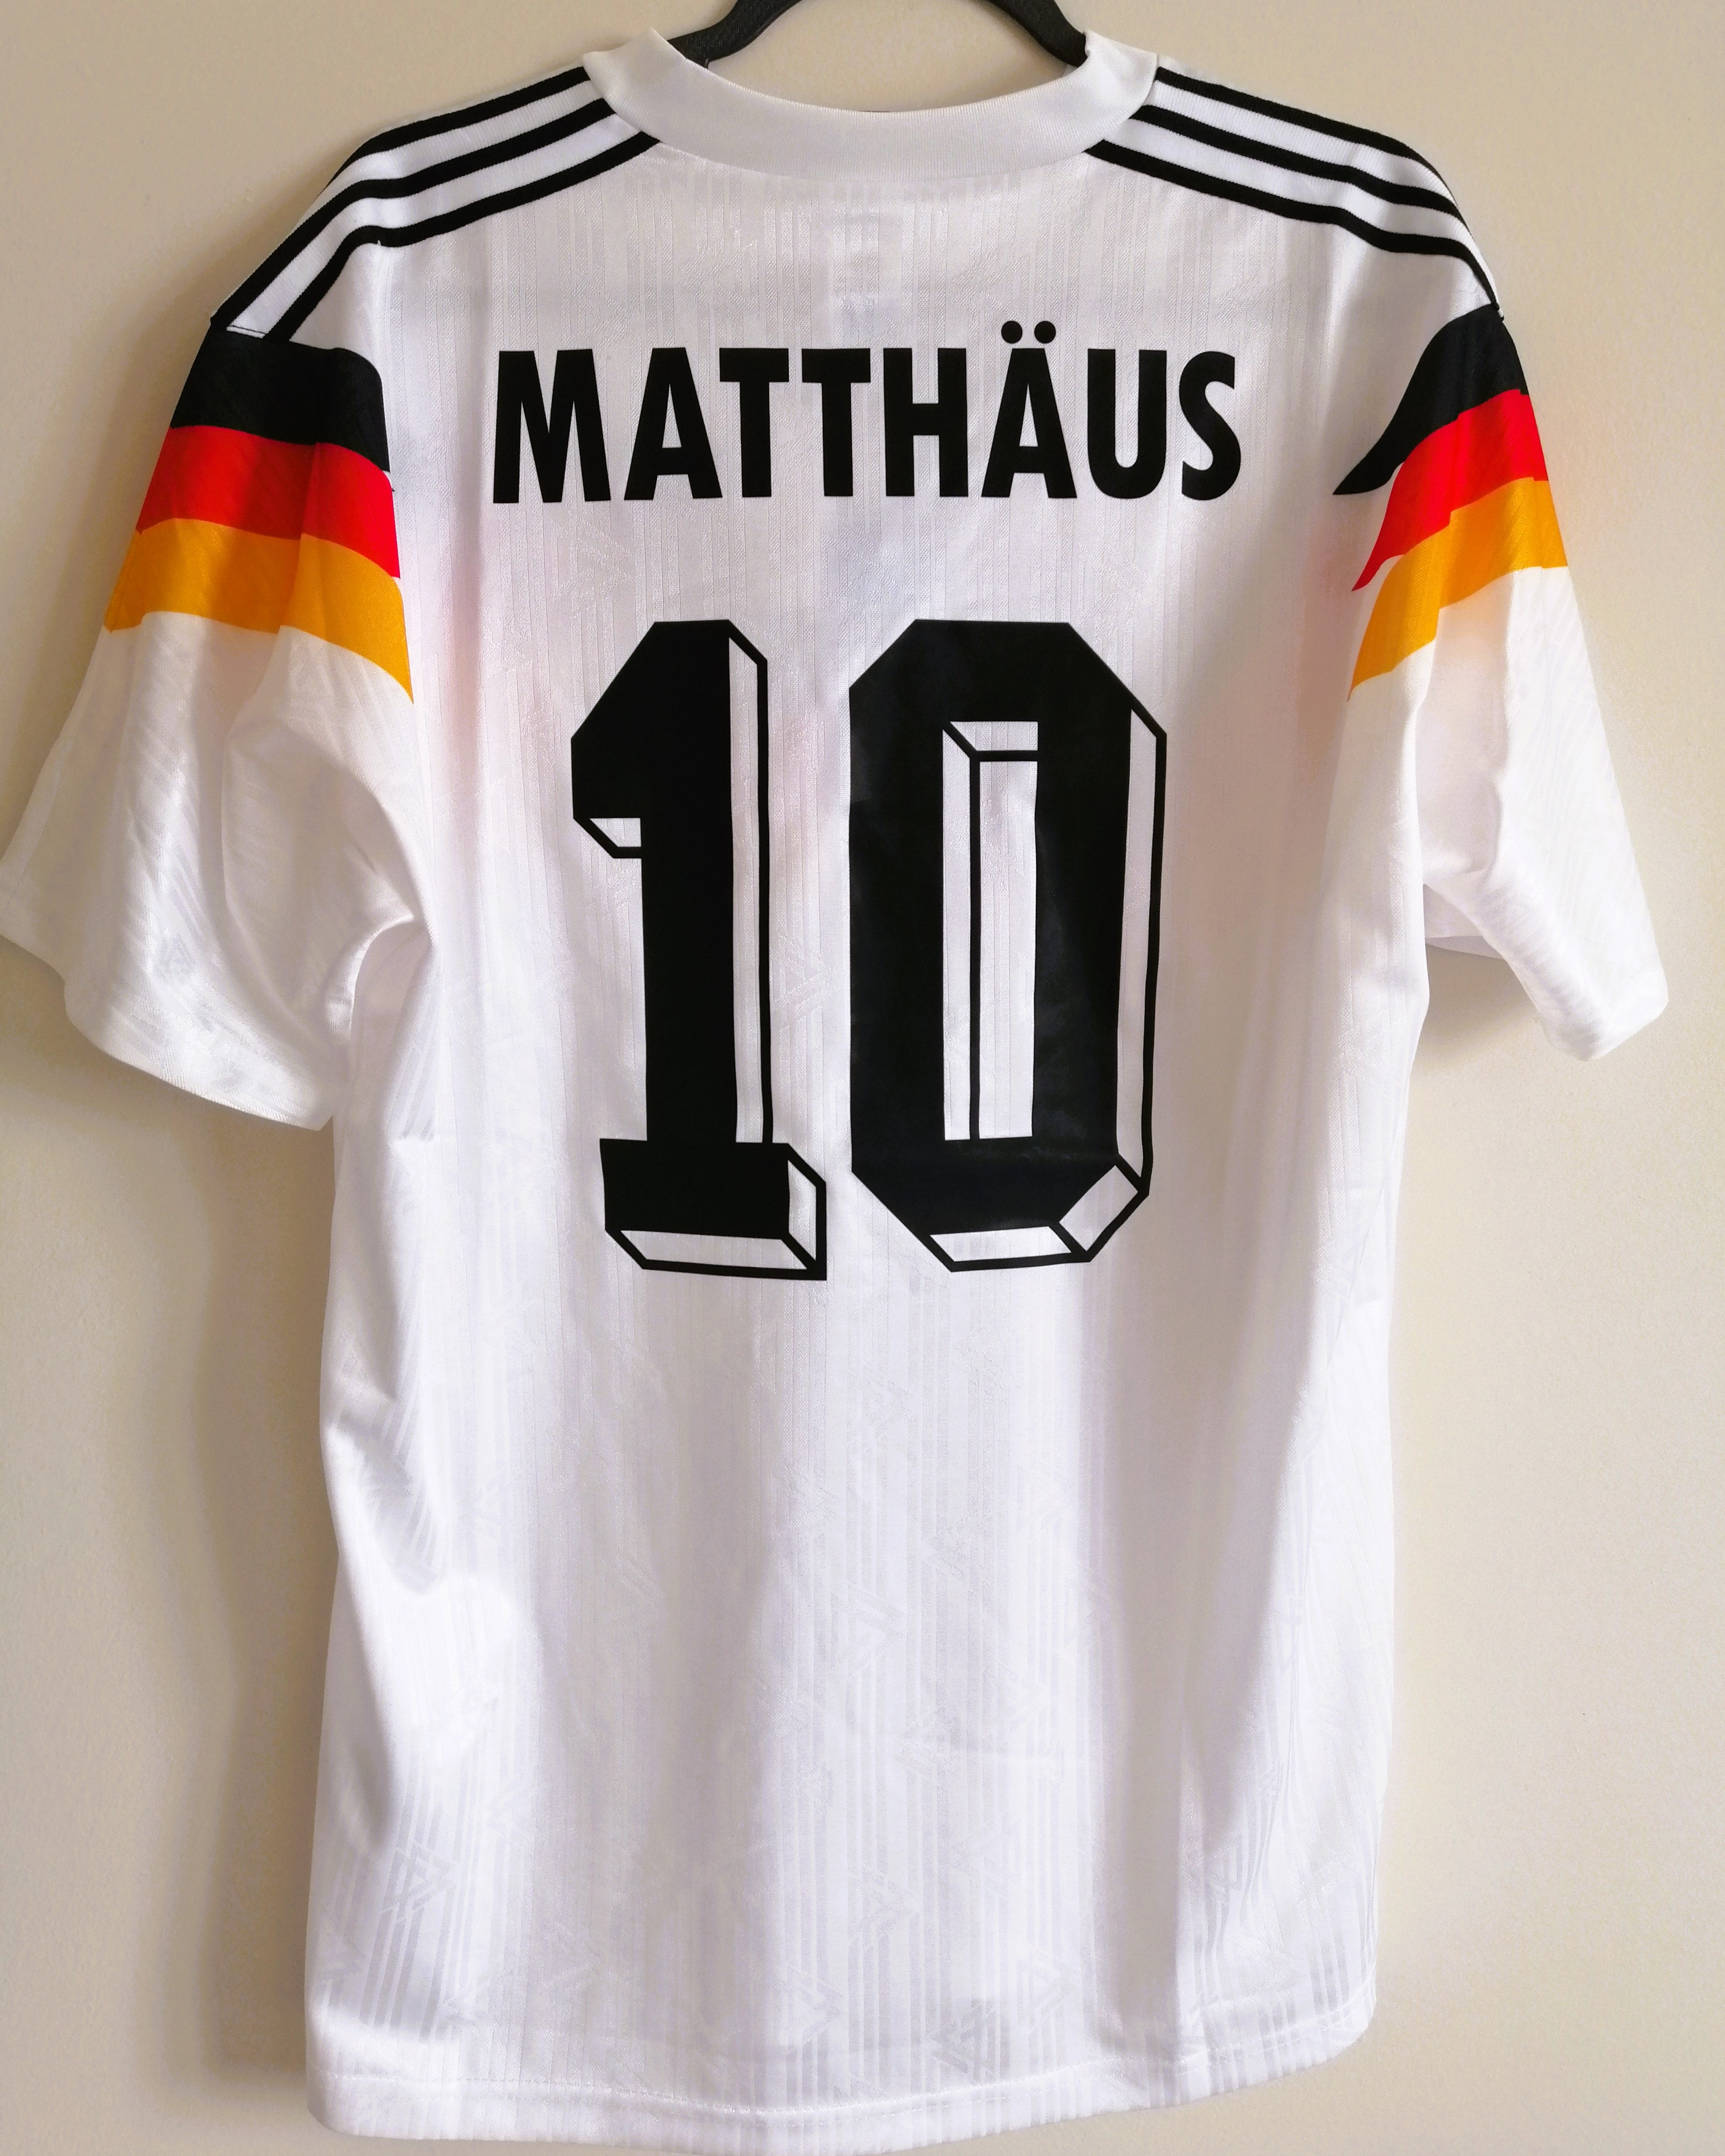 MATTHAUS LOTHAR 1990-91 (Ger)